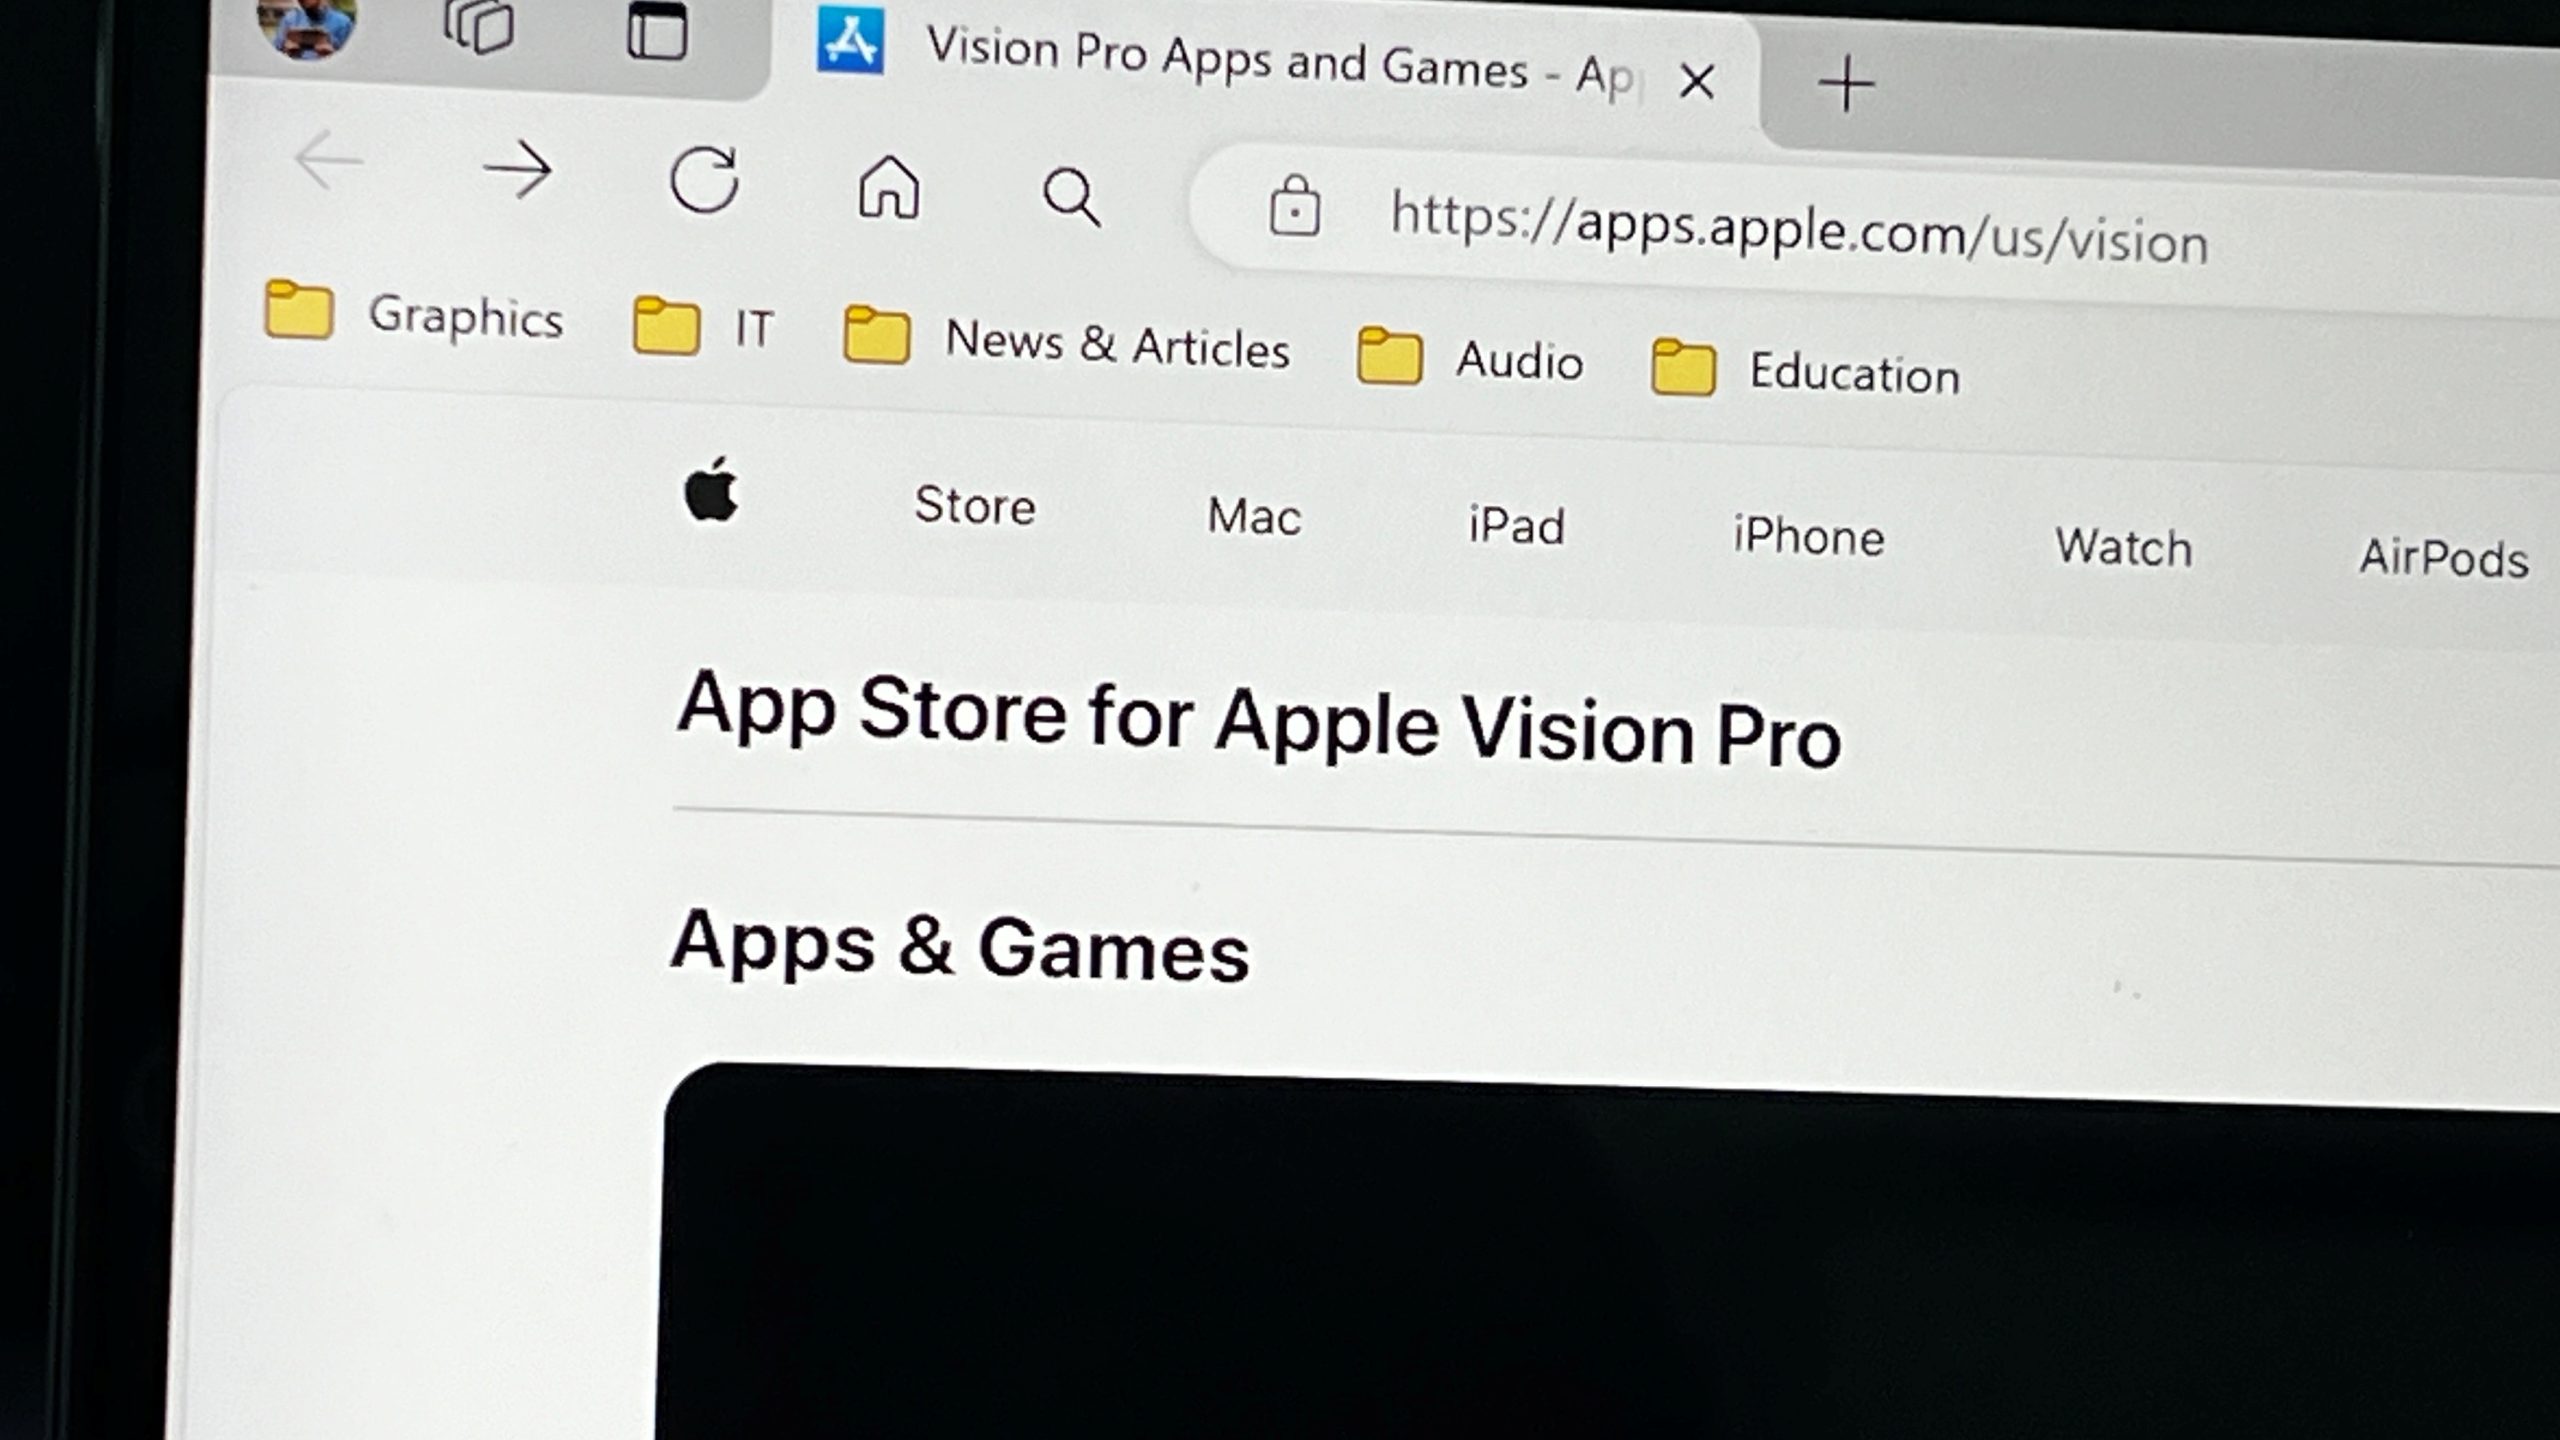 Anda Kini Boleh Melihat Semua Aplikasi Apple Vision Pro Di Laman App Store